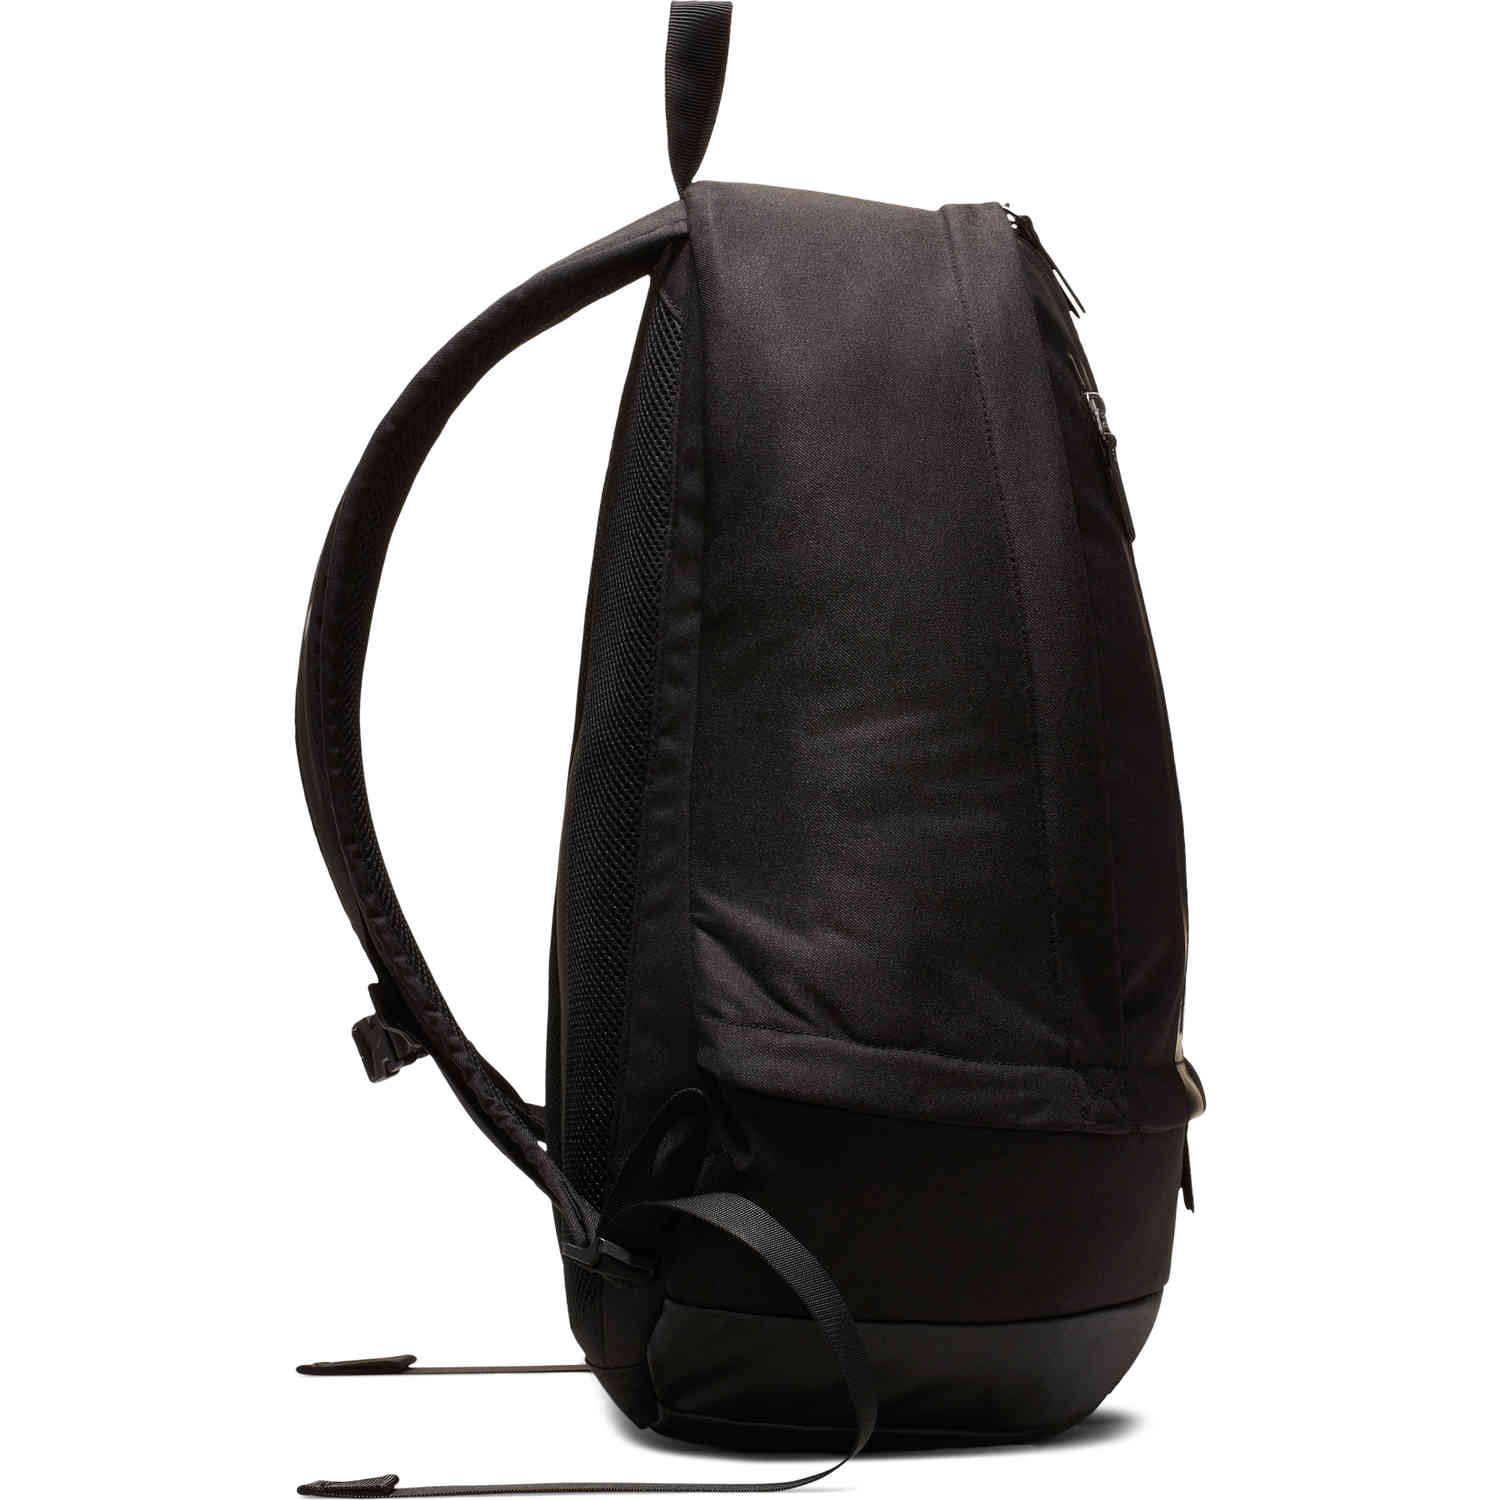 cr7 backpack cheyenne